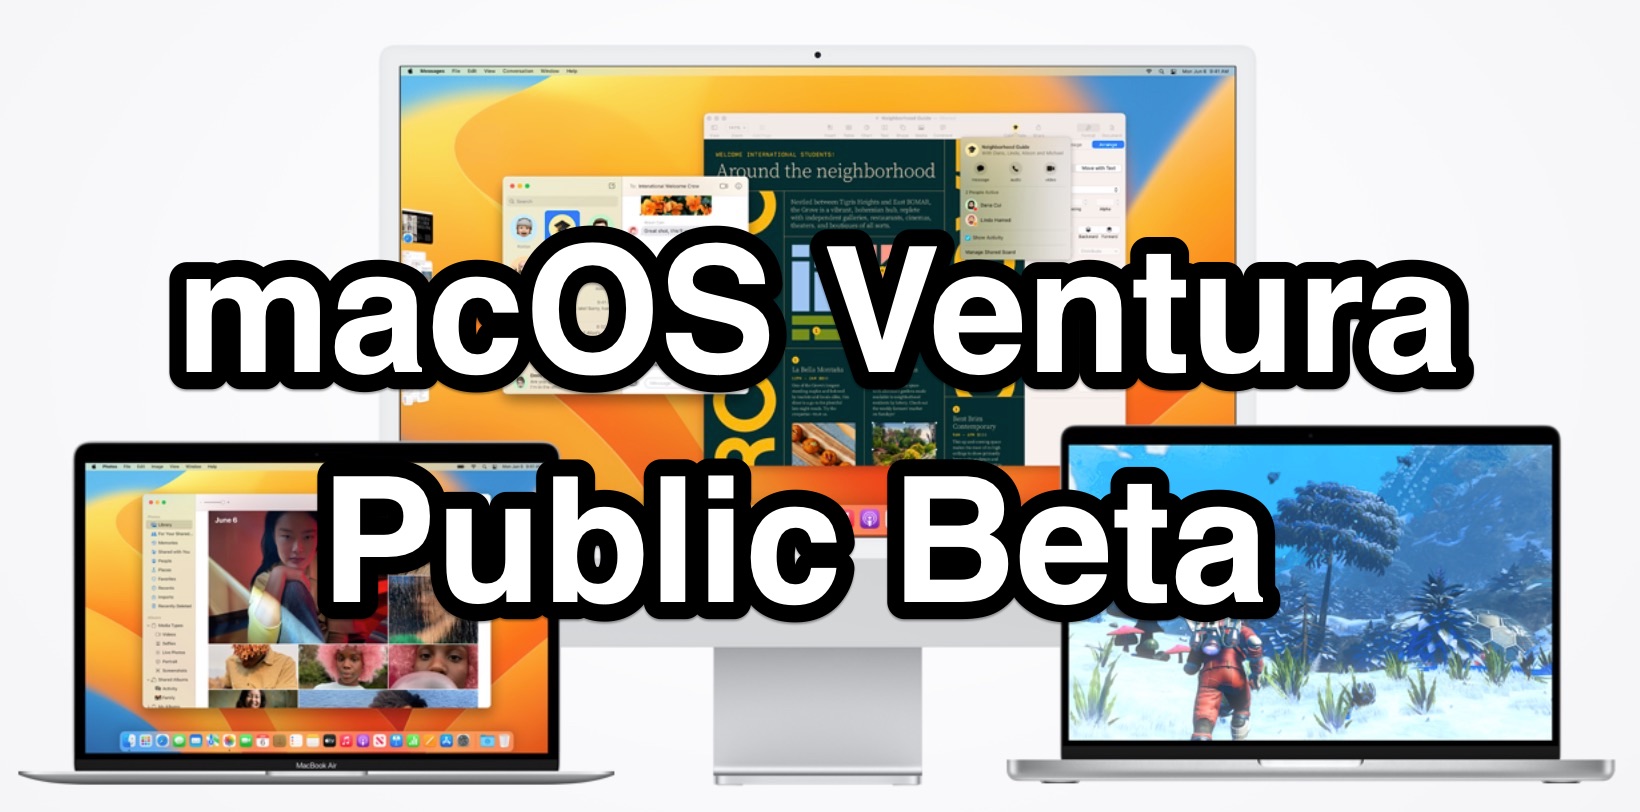 How to Install macOS Ventura Public Beta